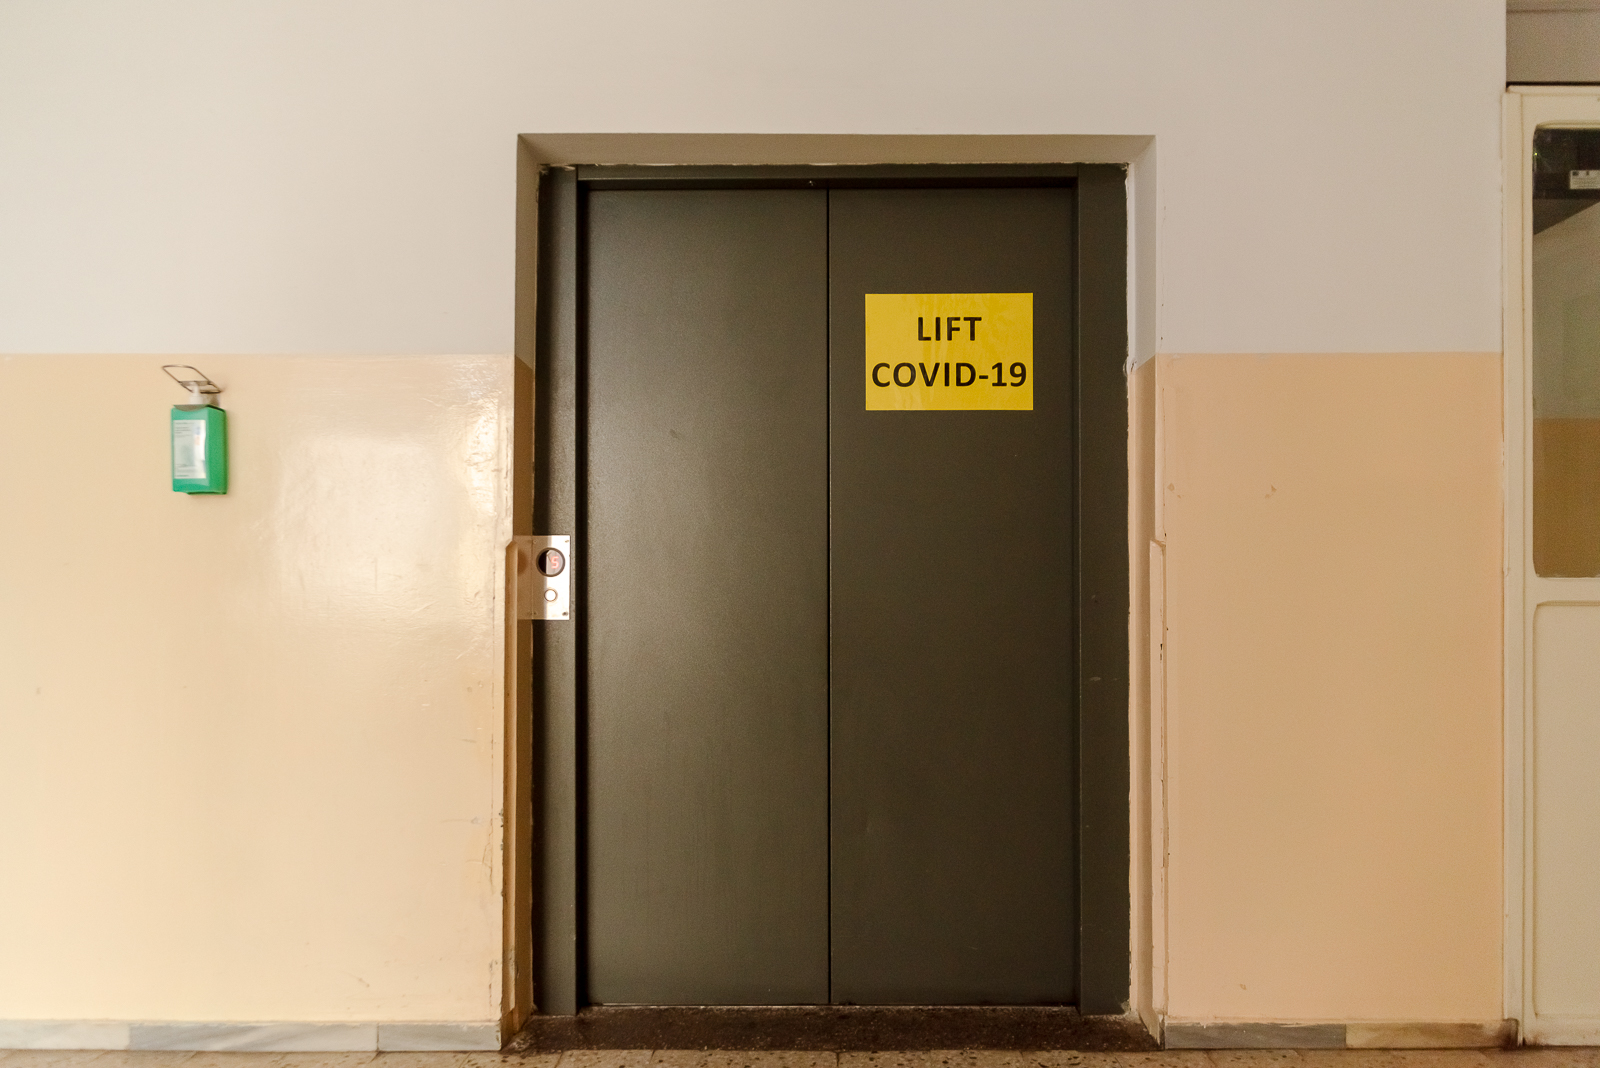 Már a folyosó is minden a koronavírusra emlékeztet - külön lift a covidosoknak. Ott jártunkkor itt szállították el az egyik áldozatot.